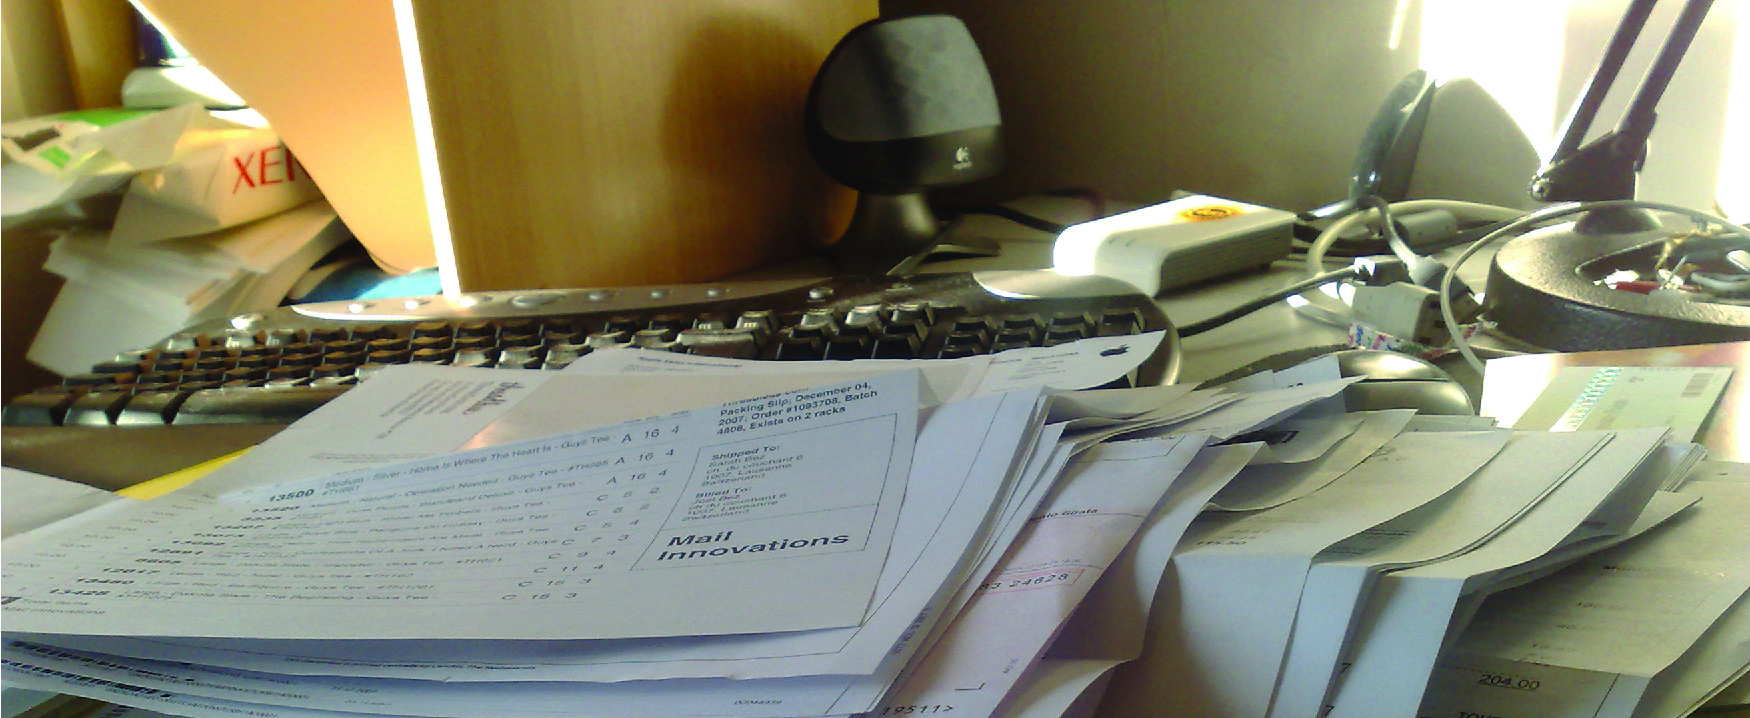 Photographie d'un bureau en désordre rempli de papiers, avec un clavier d'ordinateur en arrière-plan.